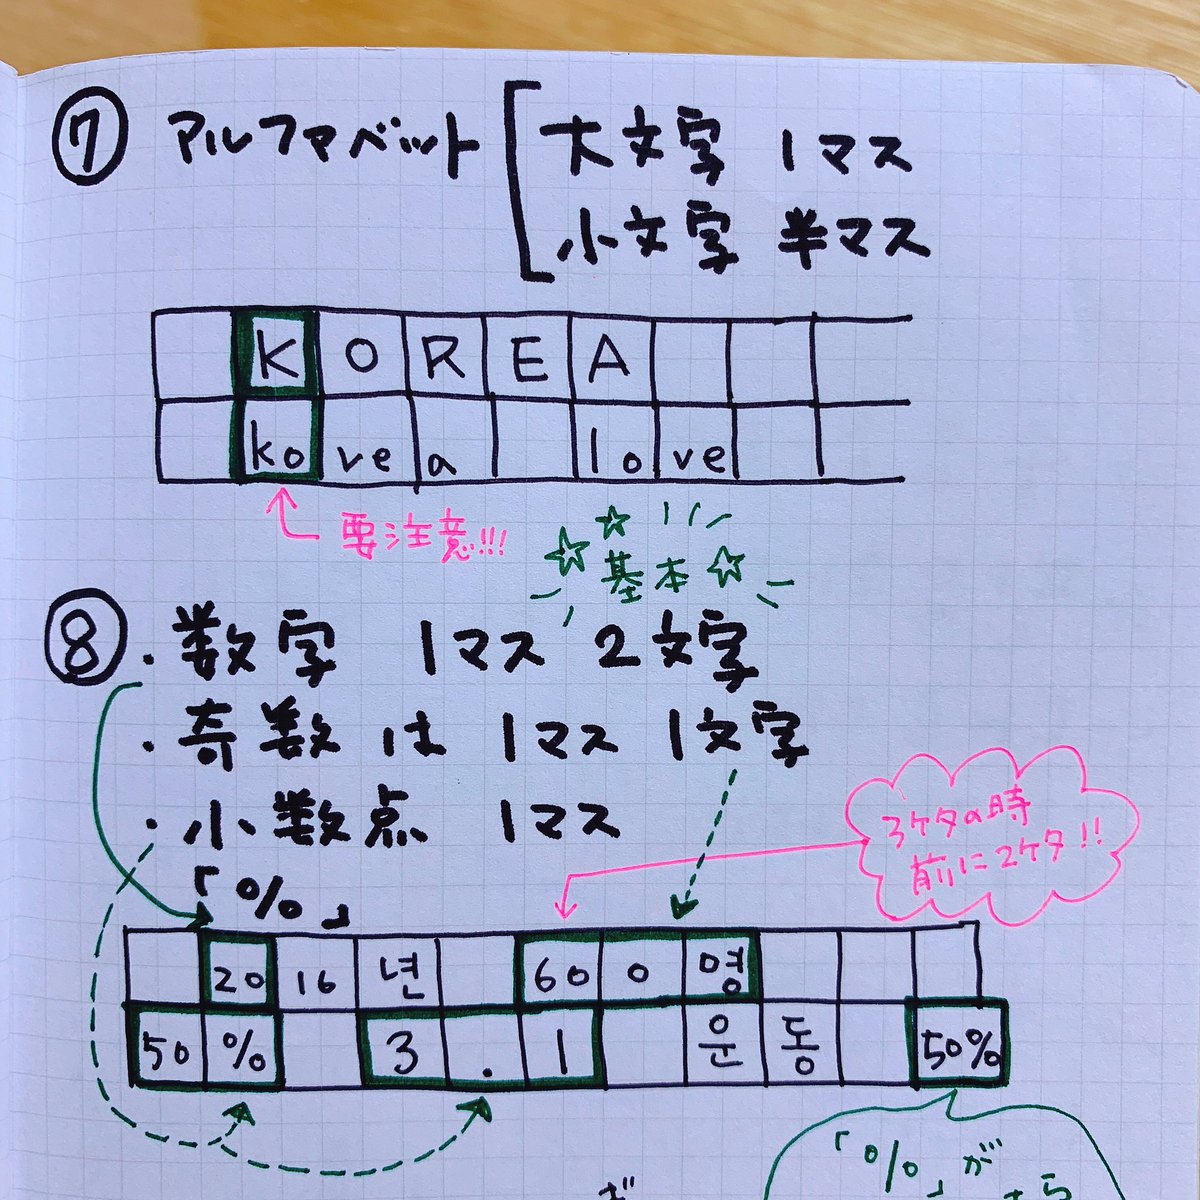 累計万部突破 Hime式イラストで学ぶ韓国語 明日topikなので投稿しておきます Topik2の作文 原稿用紙 のアルファベットや数字の書き方は特に要チェック 大文字 1マス 小文字 2マス 数字 基本2マス 例外は写真参照